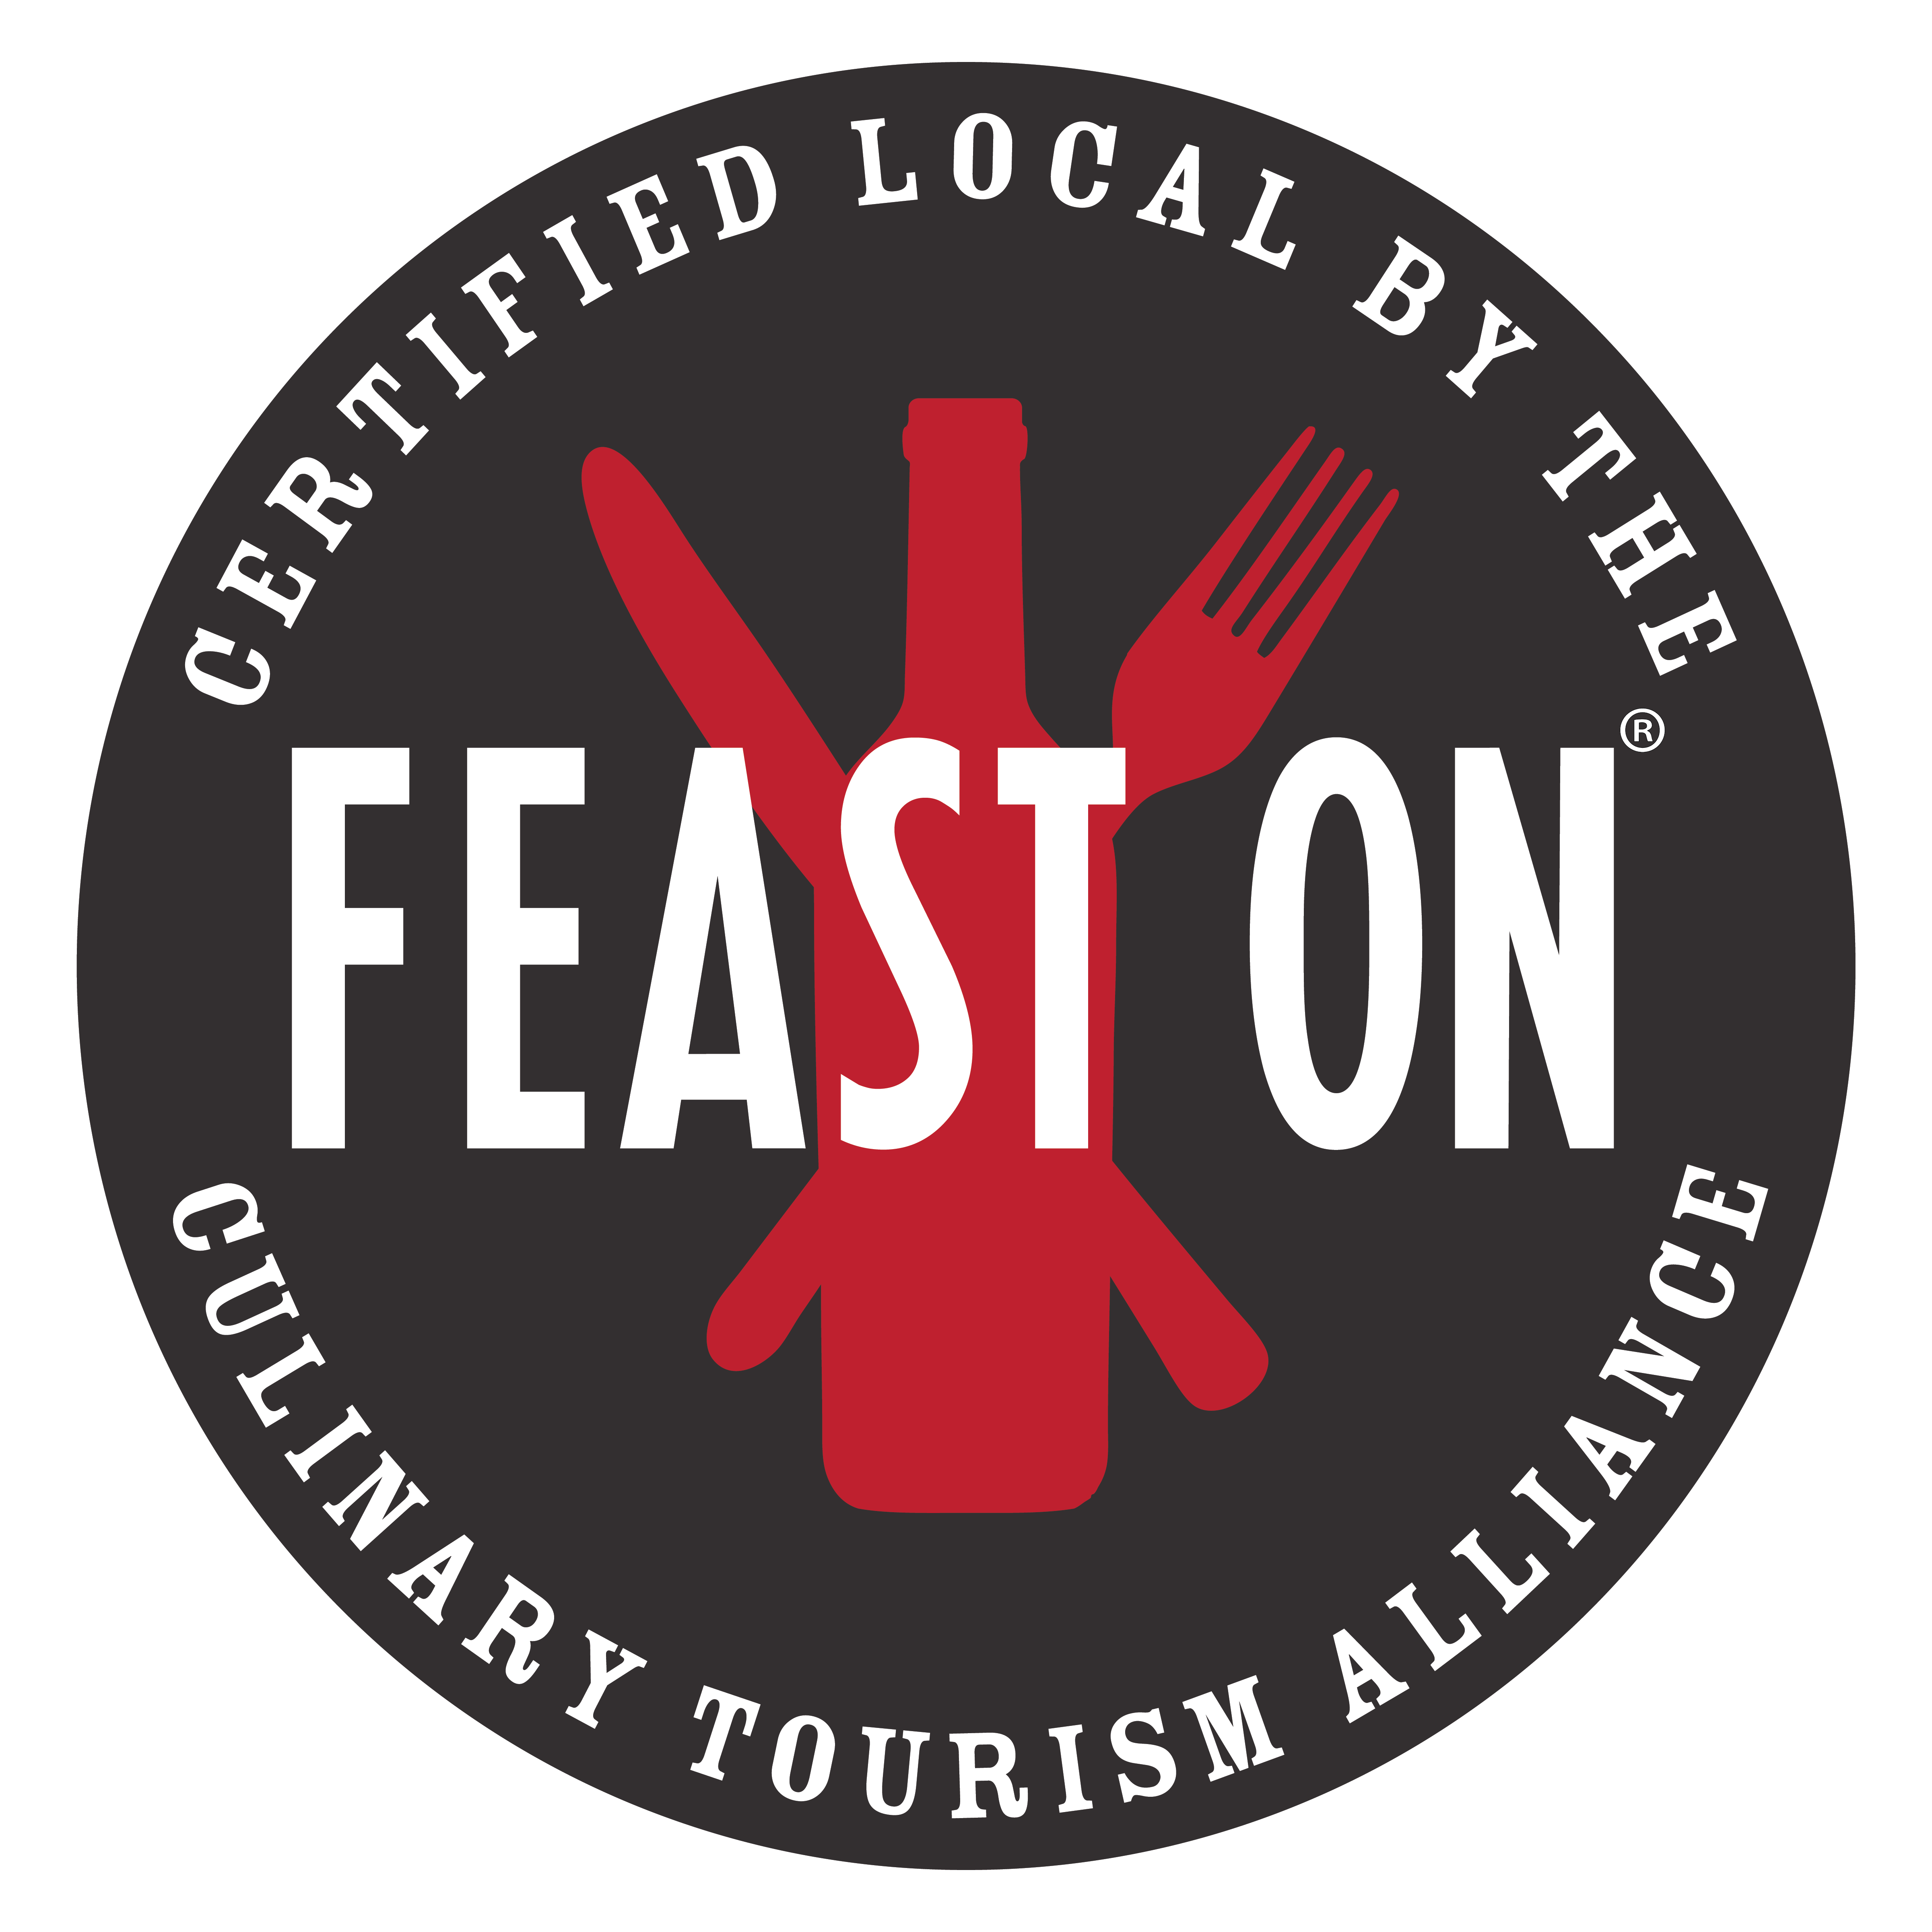 Trail Hub Feast On certified restaurant in Uxbridge